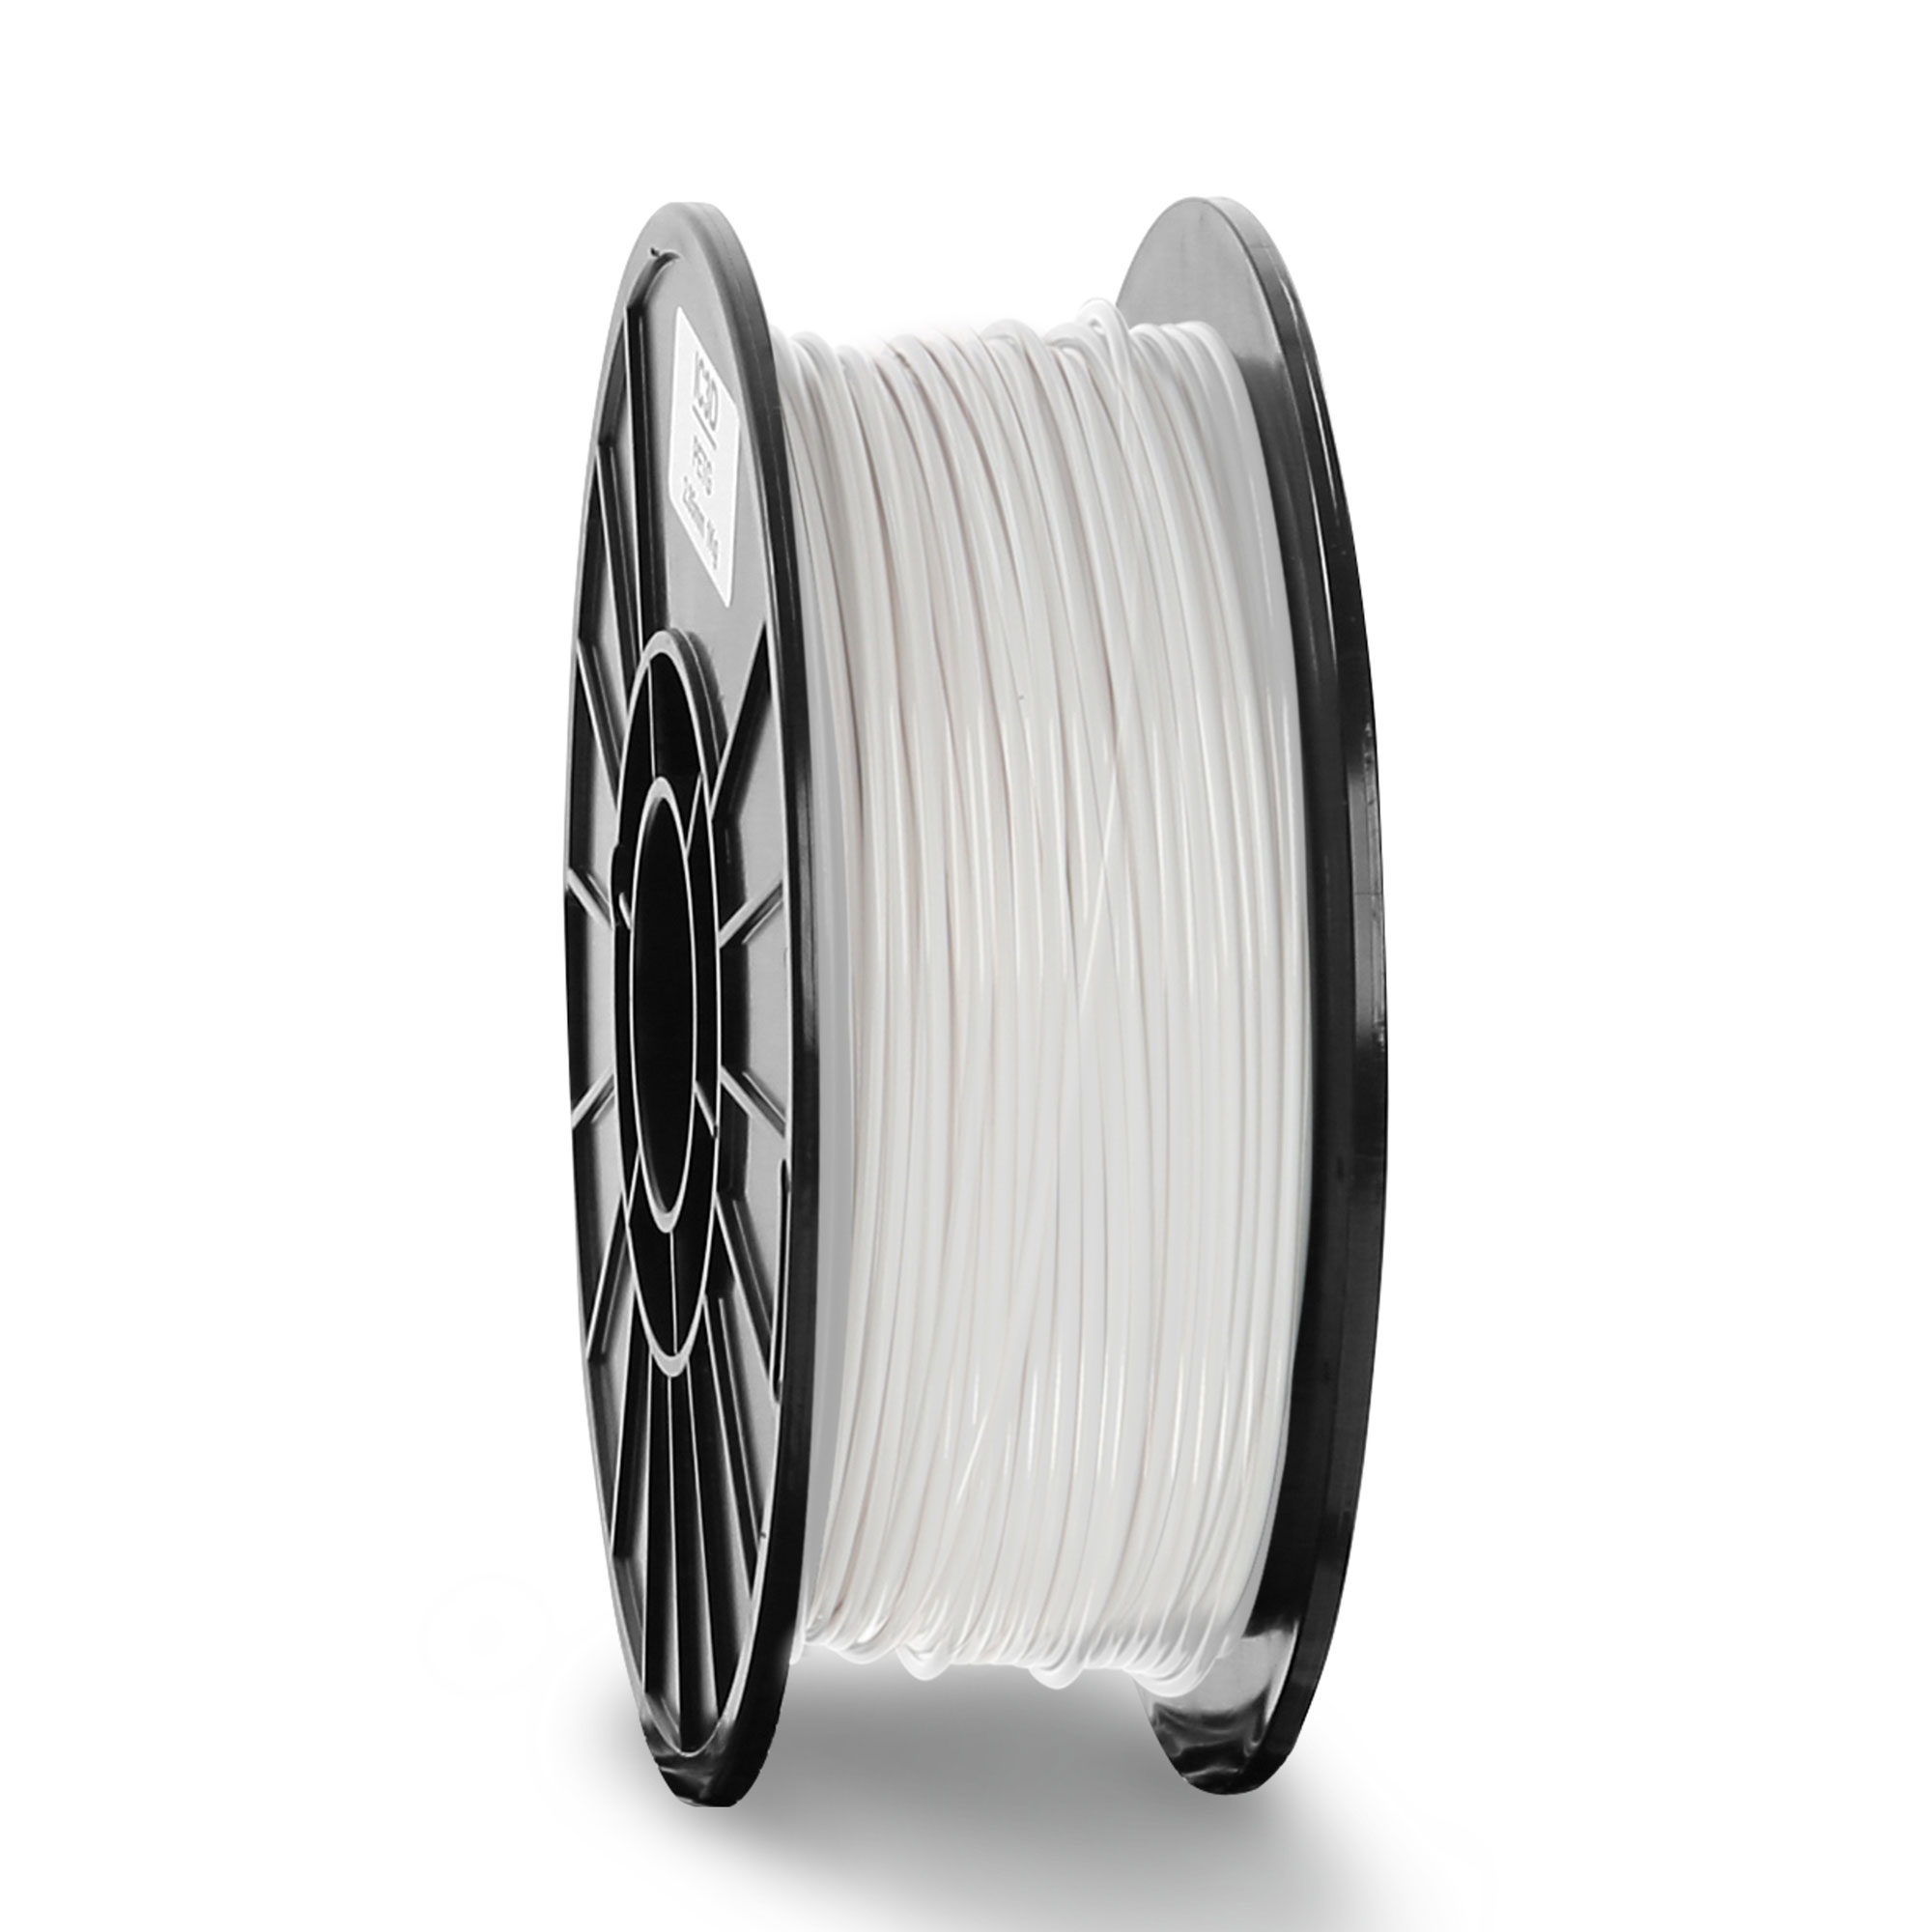 Ic3d Petg White, 3mm Filament, 1kg